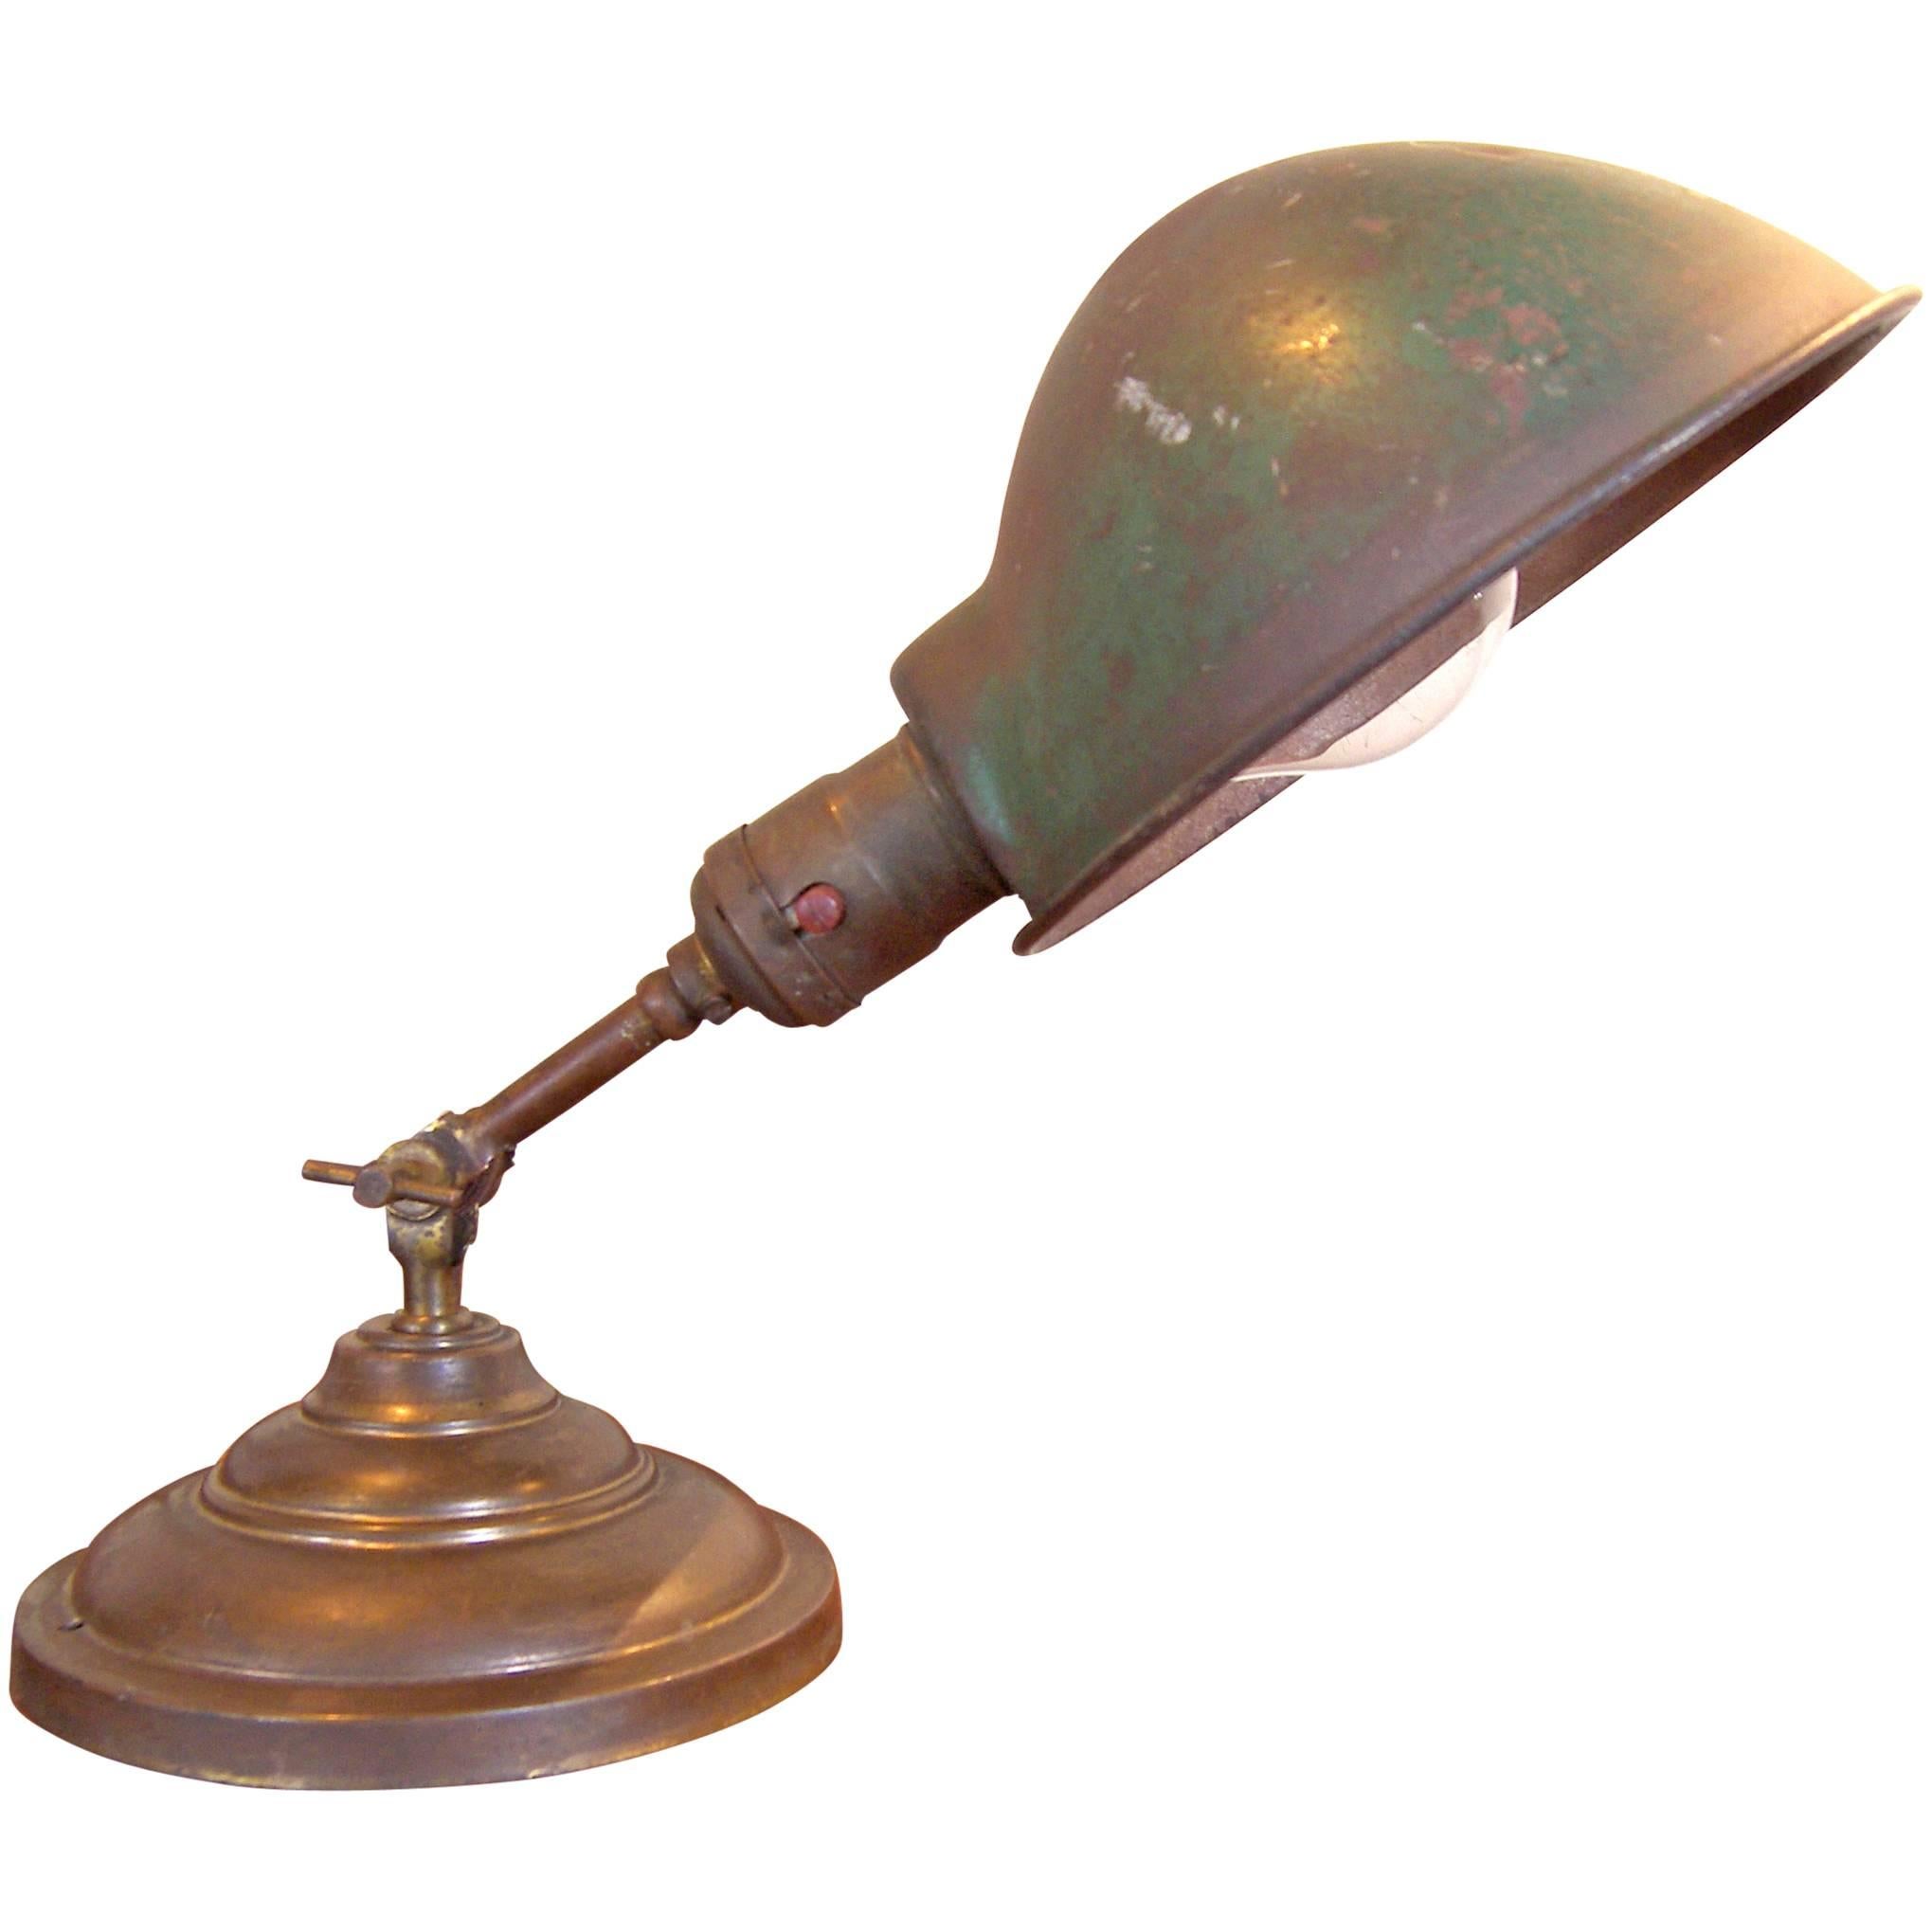 Antique Vintage Industrial Adjustable Metal & Brass Desk Table Task Lamp Light